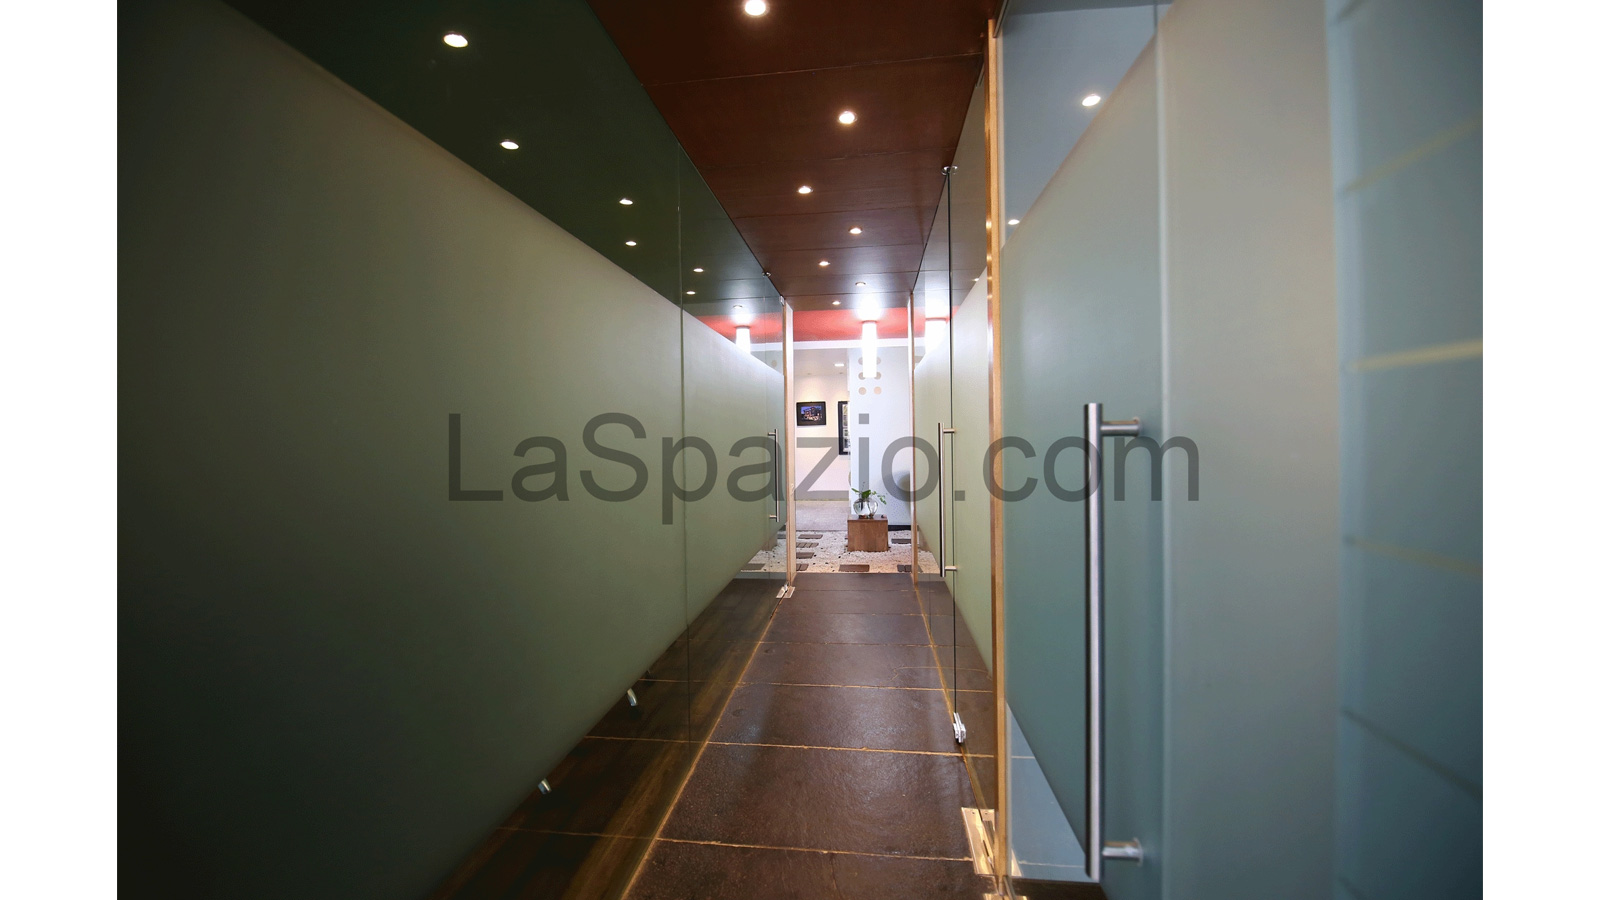 Laspazio Modern Interior Corridor